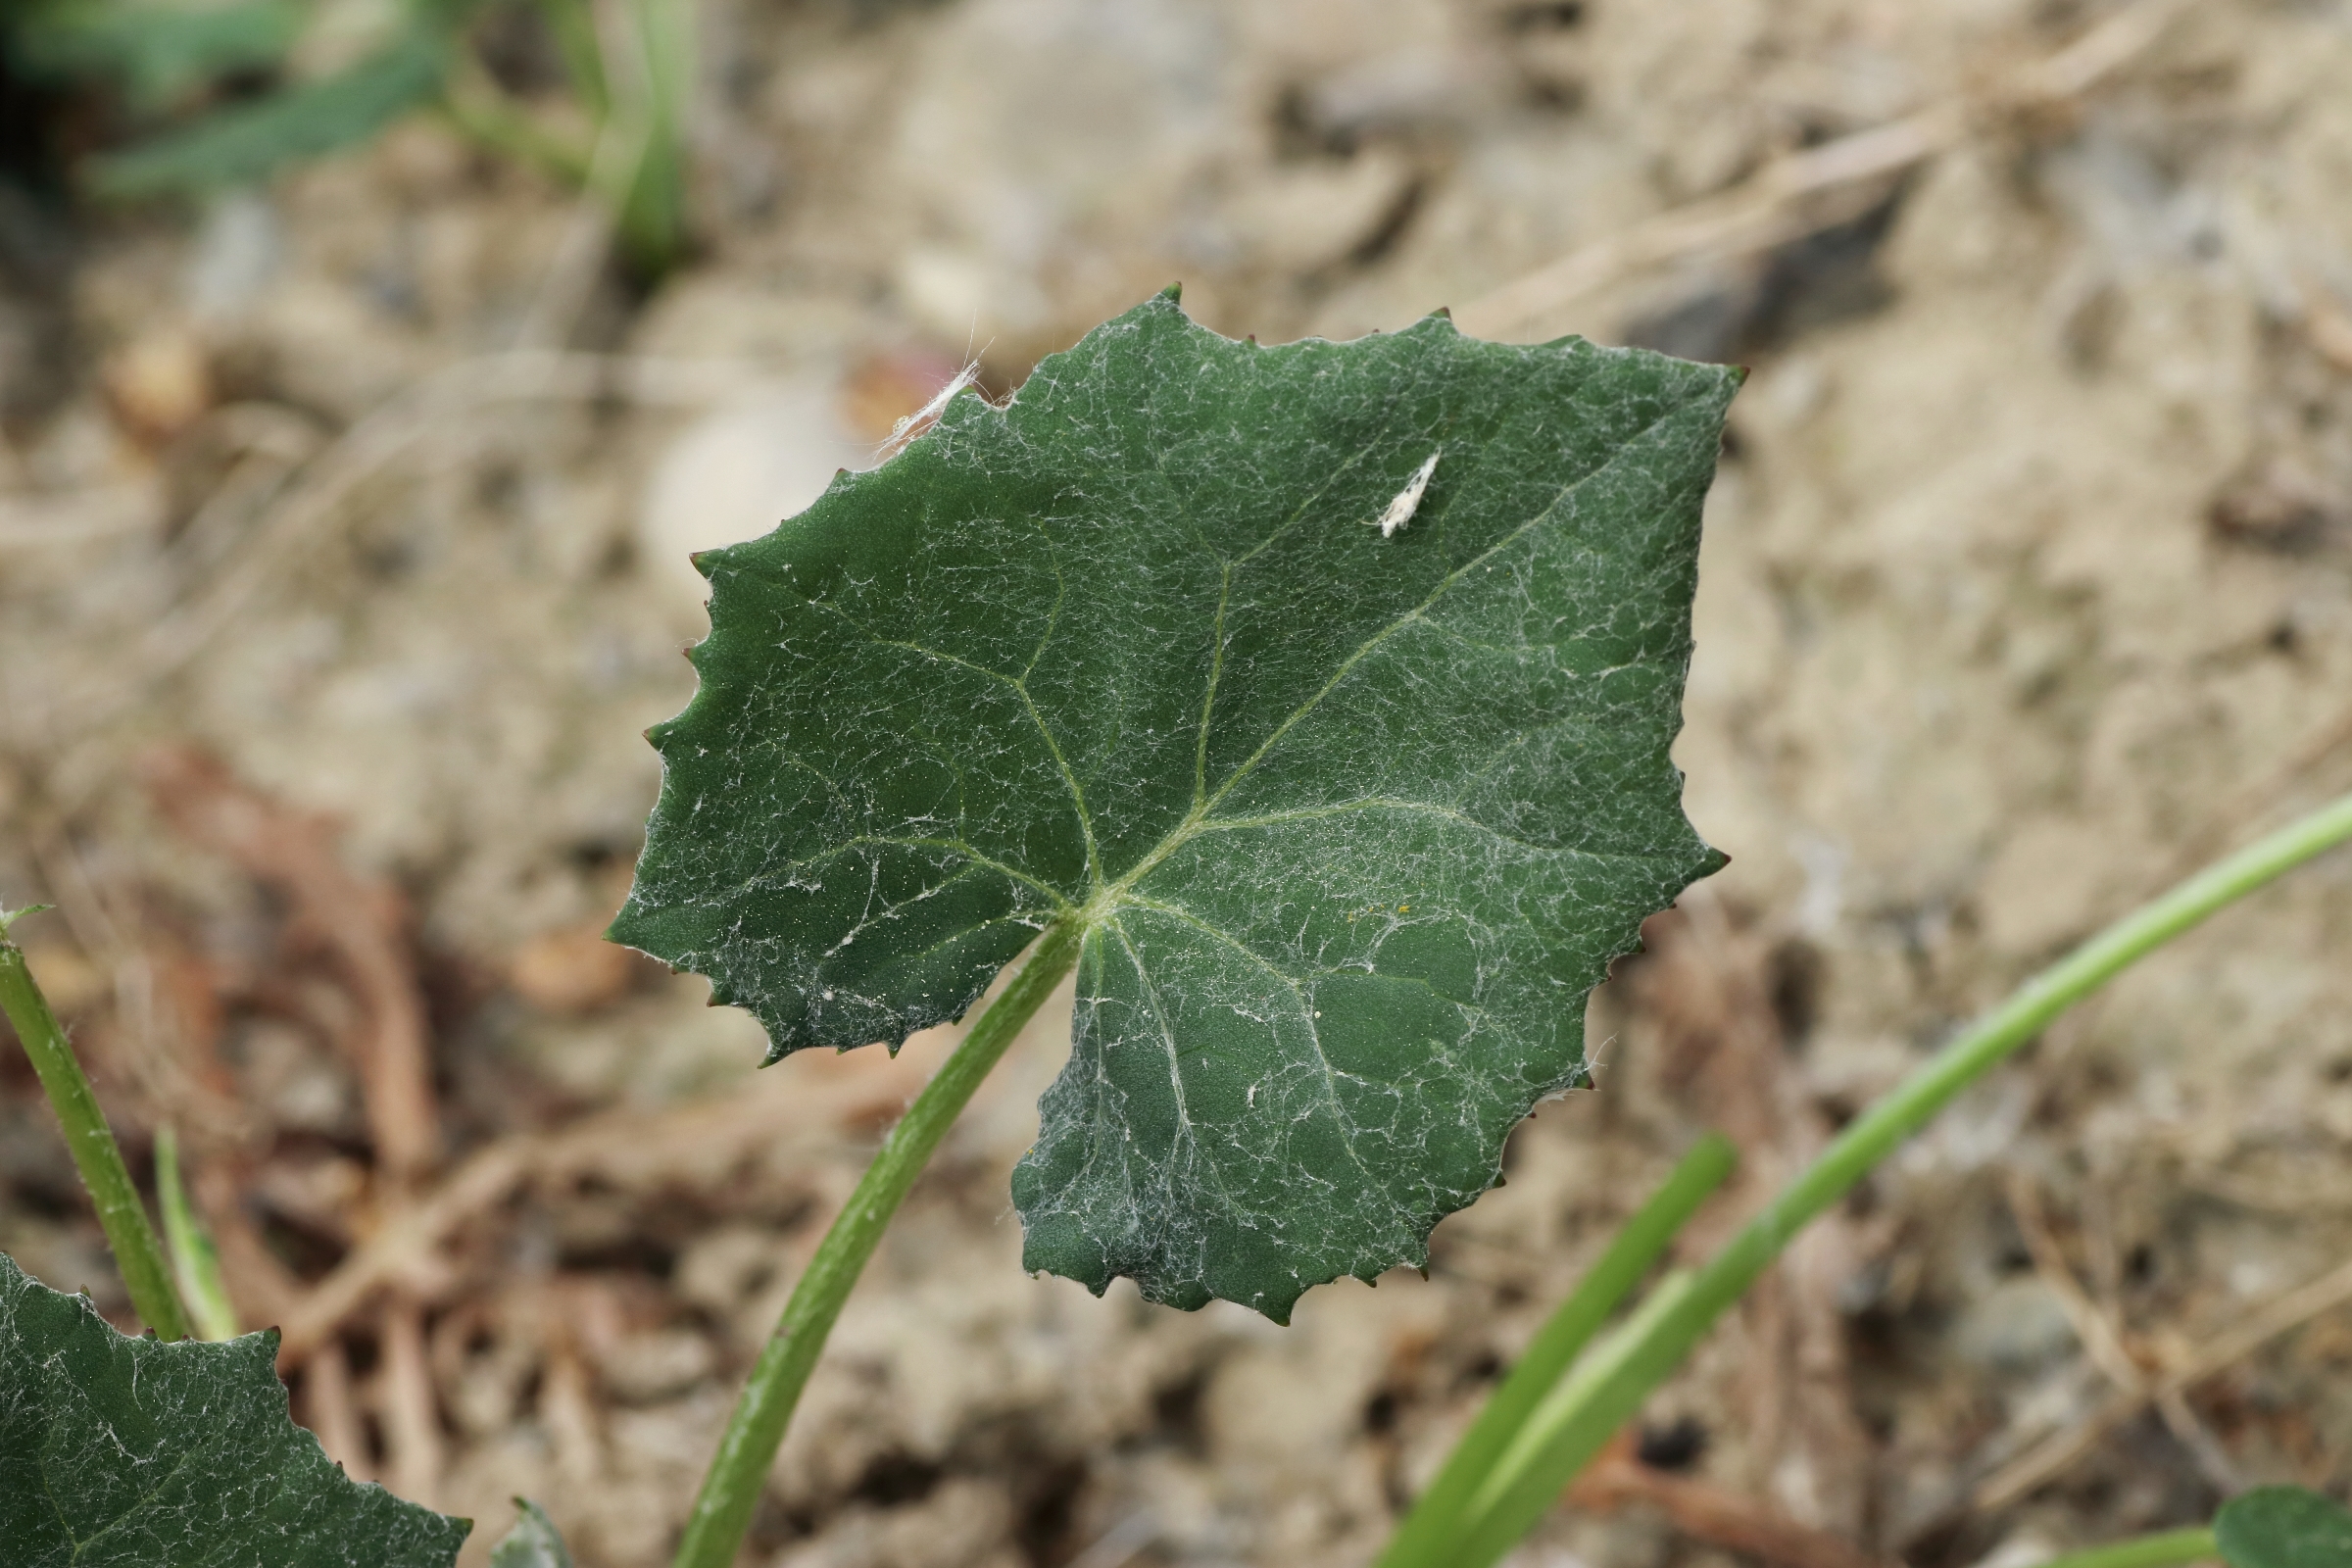 Blatt des Huflattich - rundlich herzförmig aufgebaut und am Rand leicht gezähnt. Die Oberseite der Blätter sind dunkelgrün gefärbt.